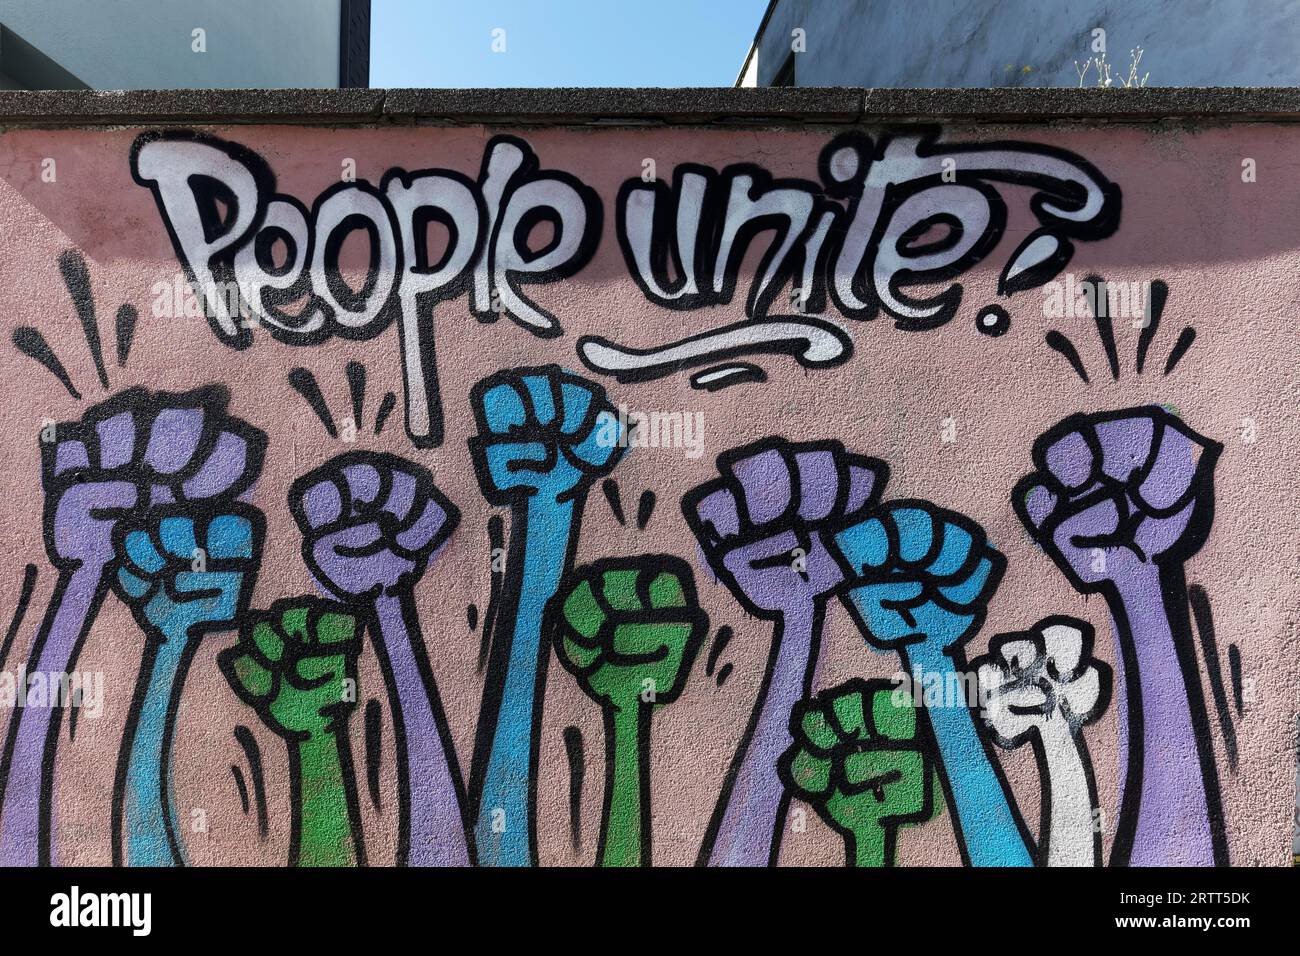 Ausgestreckte Hände mit geballter Faust, Buchstaben vereinen Menschen, Wandgemälde mit politischer Botschaft, zusammen stark, Bochum, Nordrhein-Westfalen, Deutschland Stockfoto